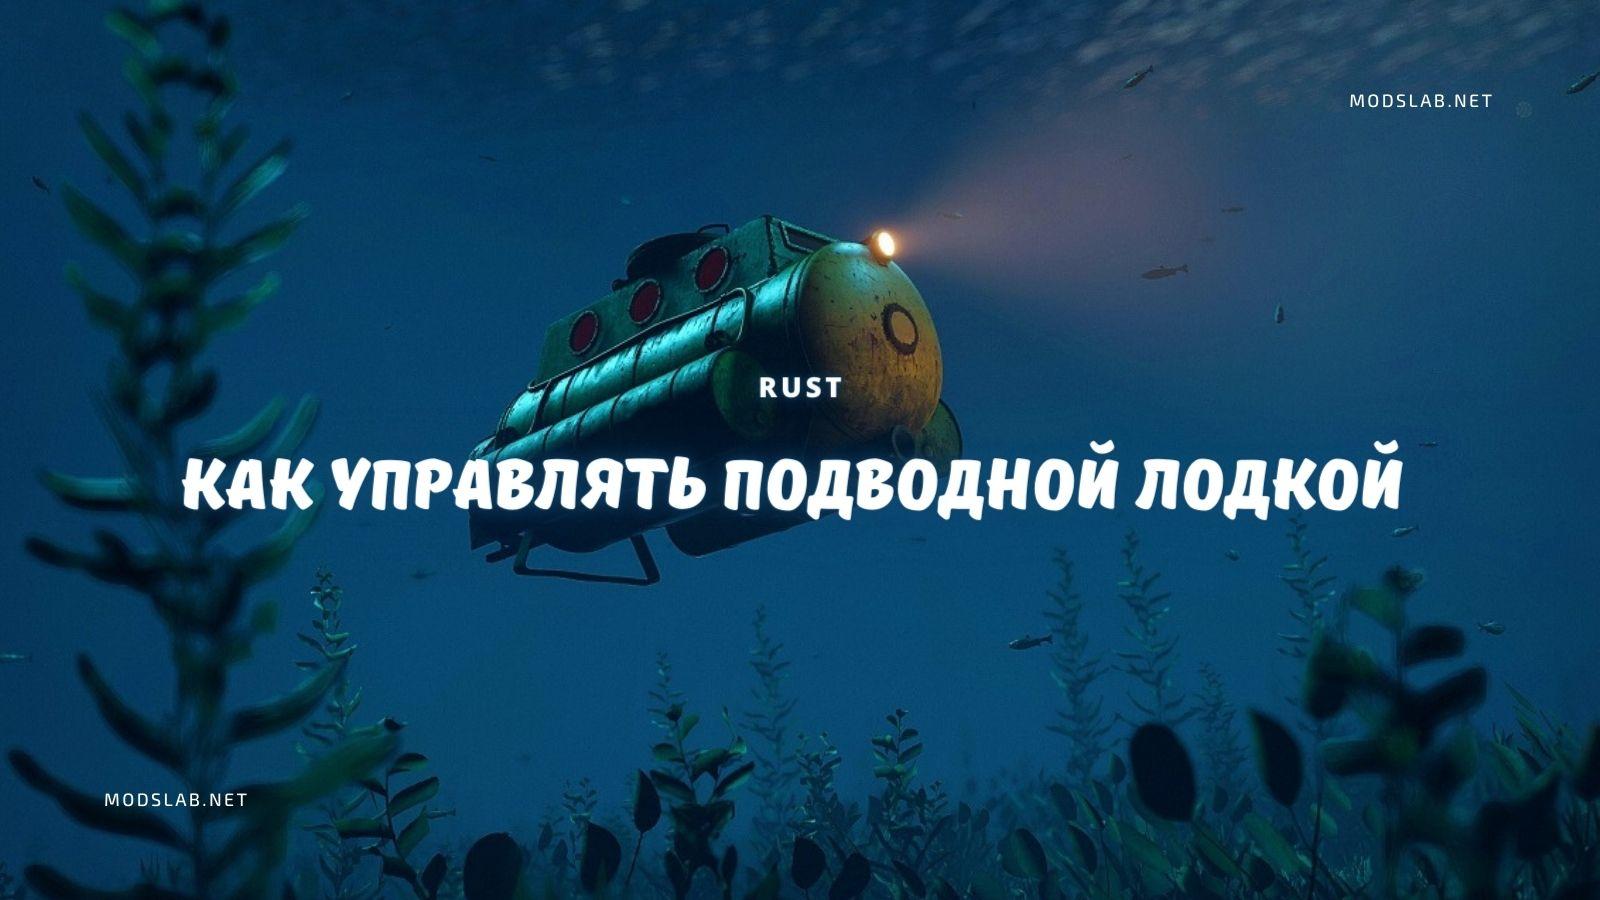 подводная лодка rust фото 81